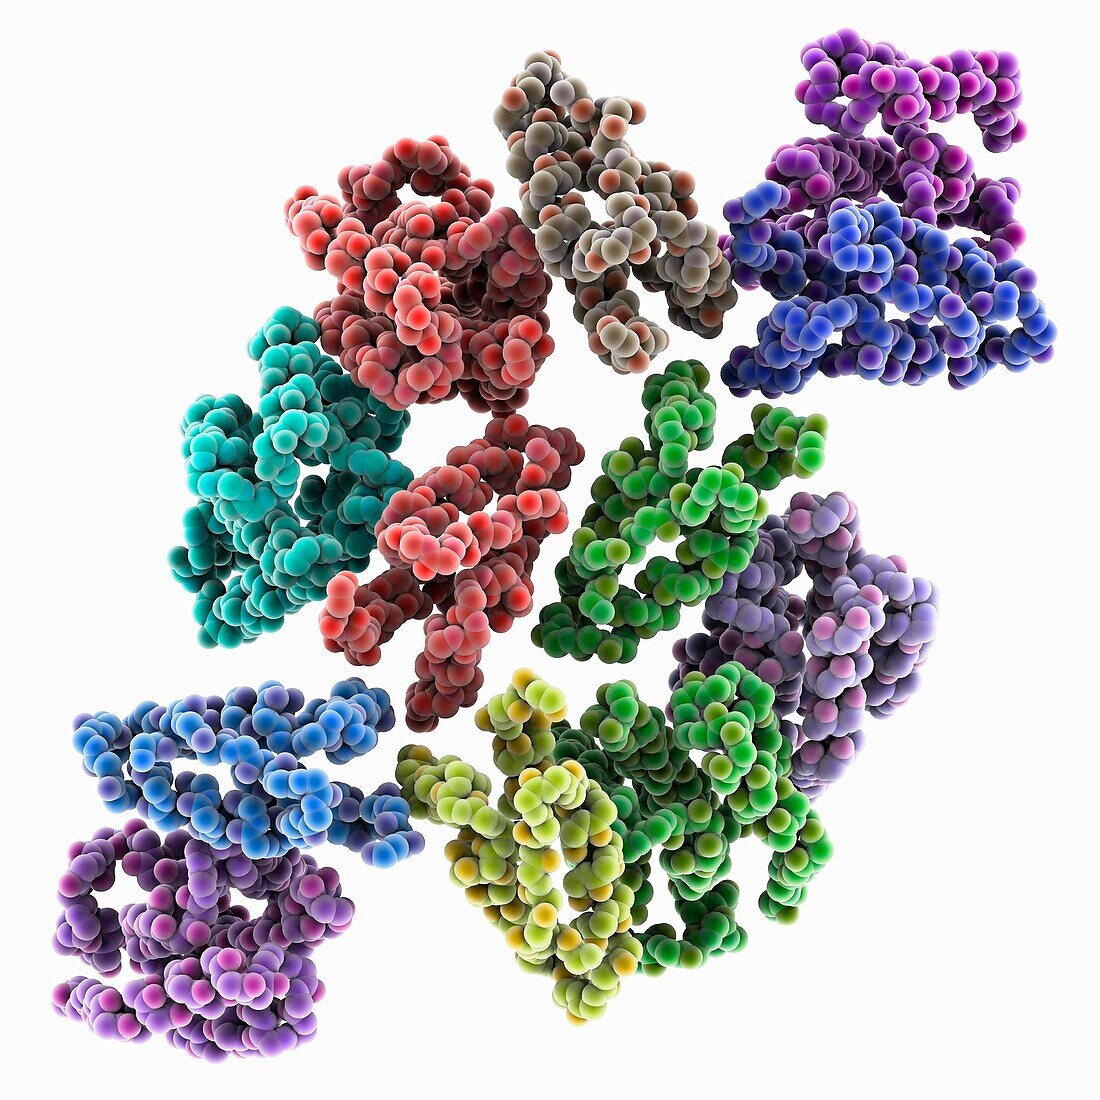 Mature Rous sarcoma virus lattice, molecular model